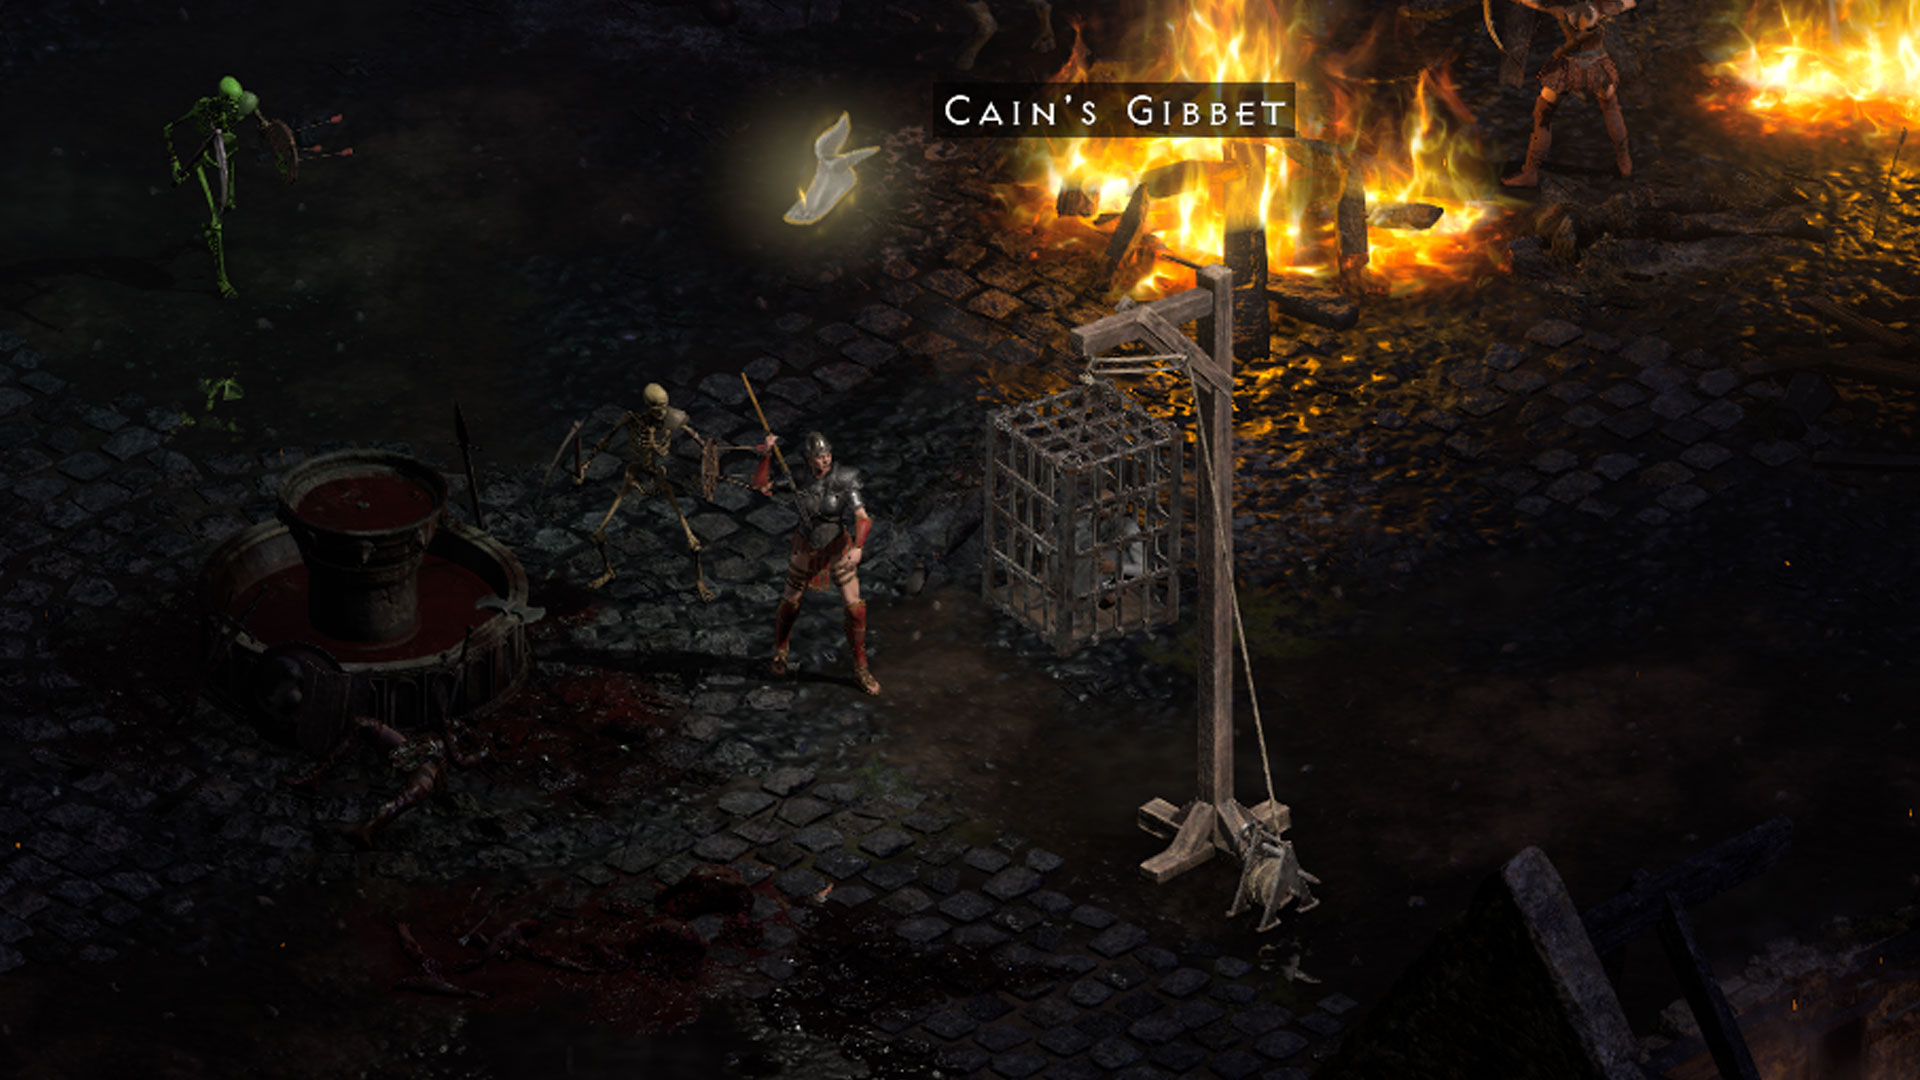 Le gibet de Caïn ressuscité Diablo 2